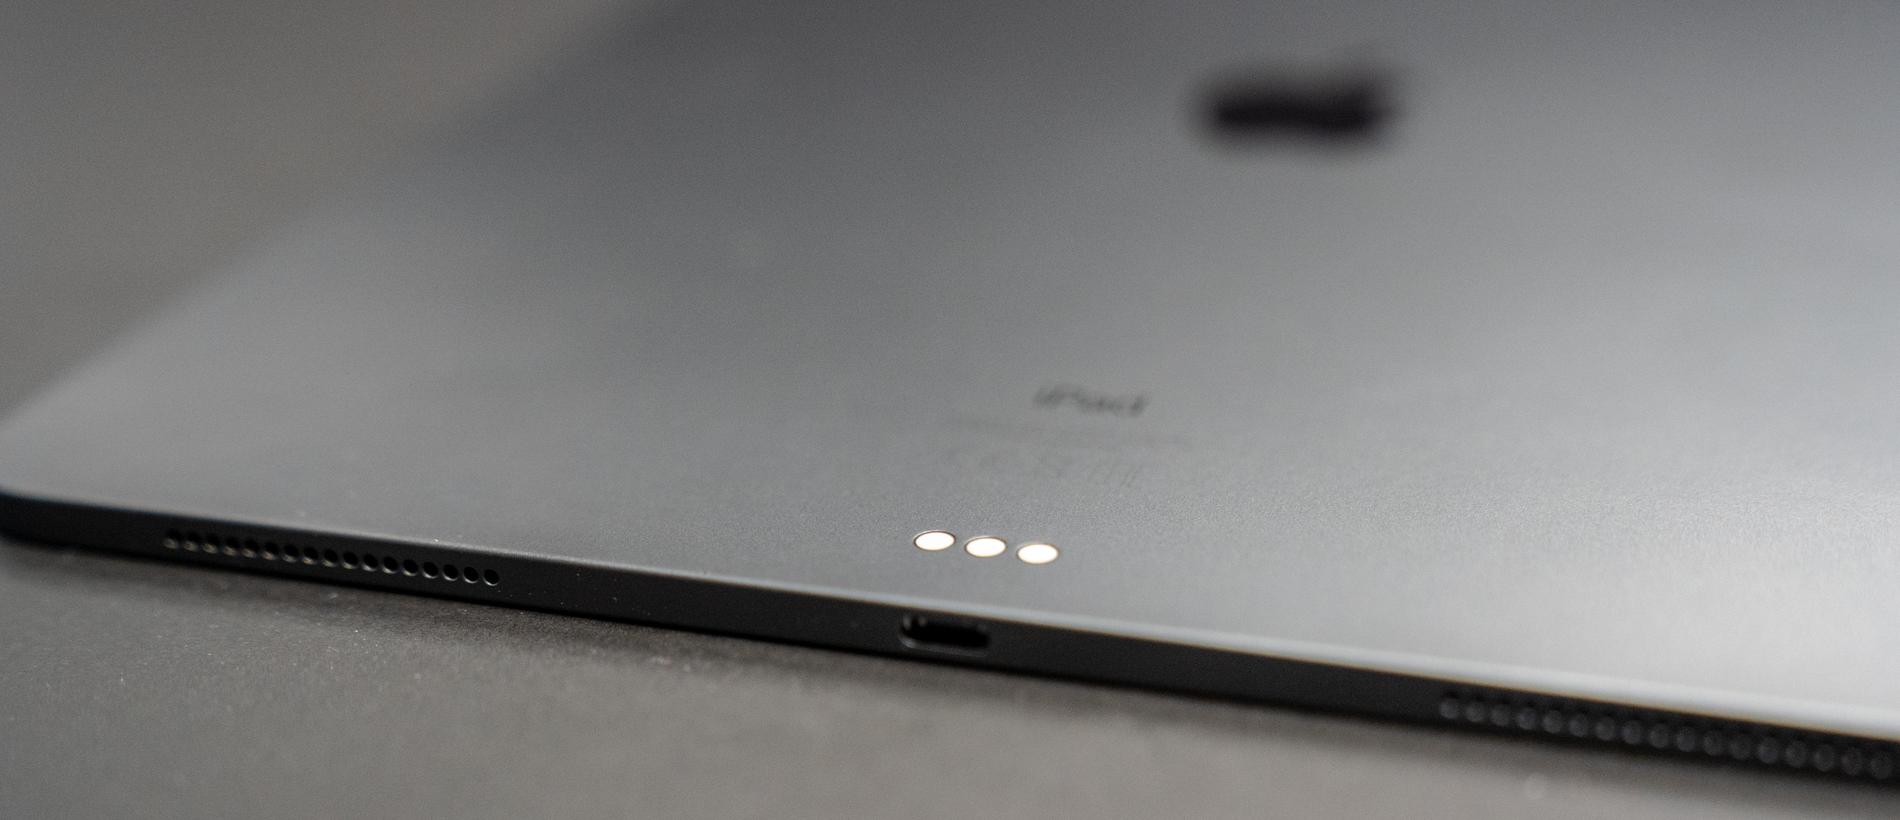 Apples smarta tangentbord kopplas in via tre anslutningspunkter på baksidan av Ipad Pro.